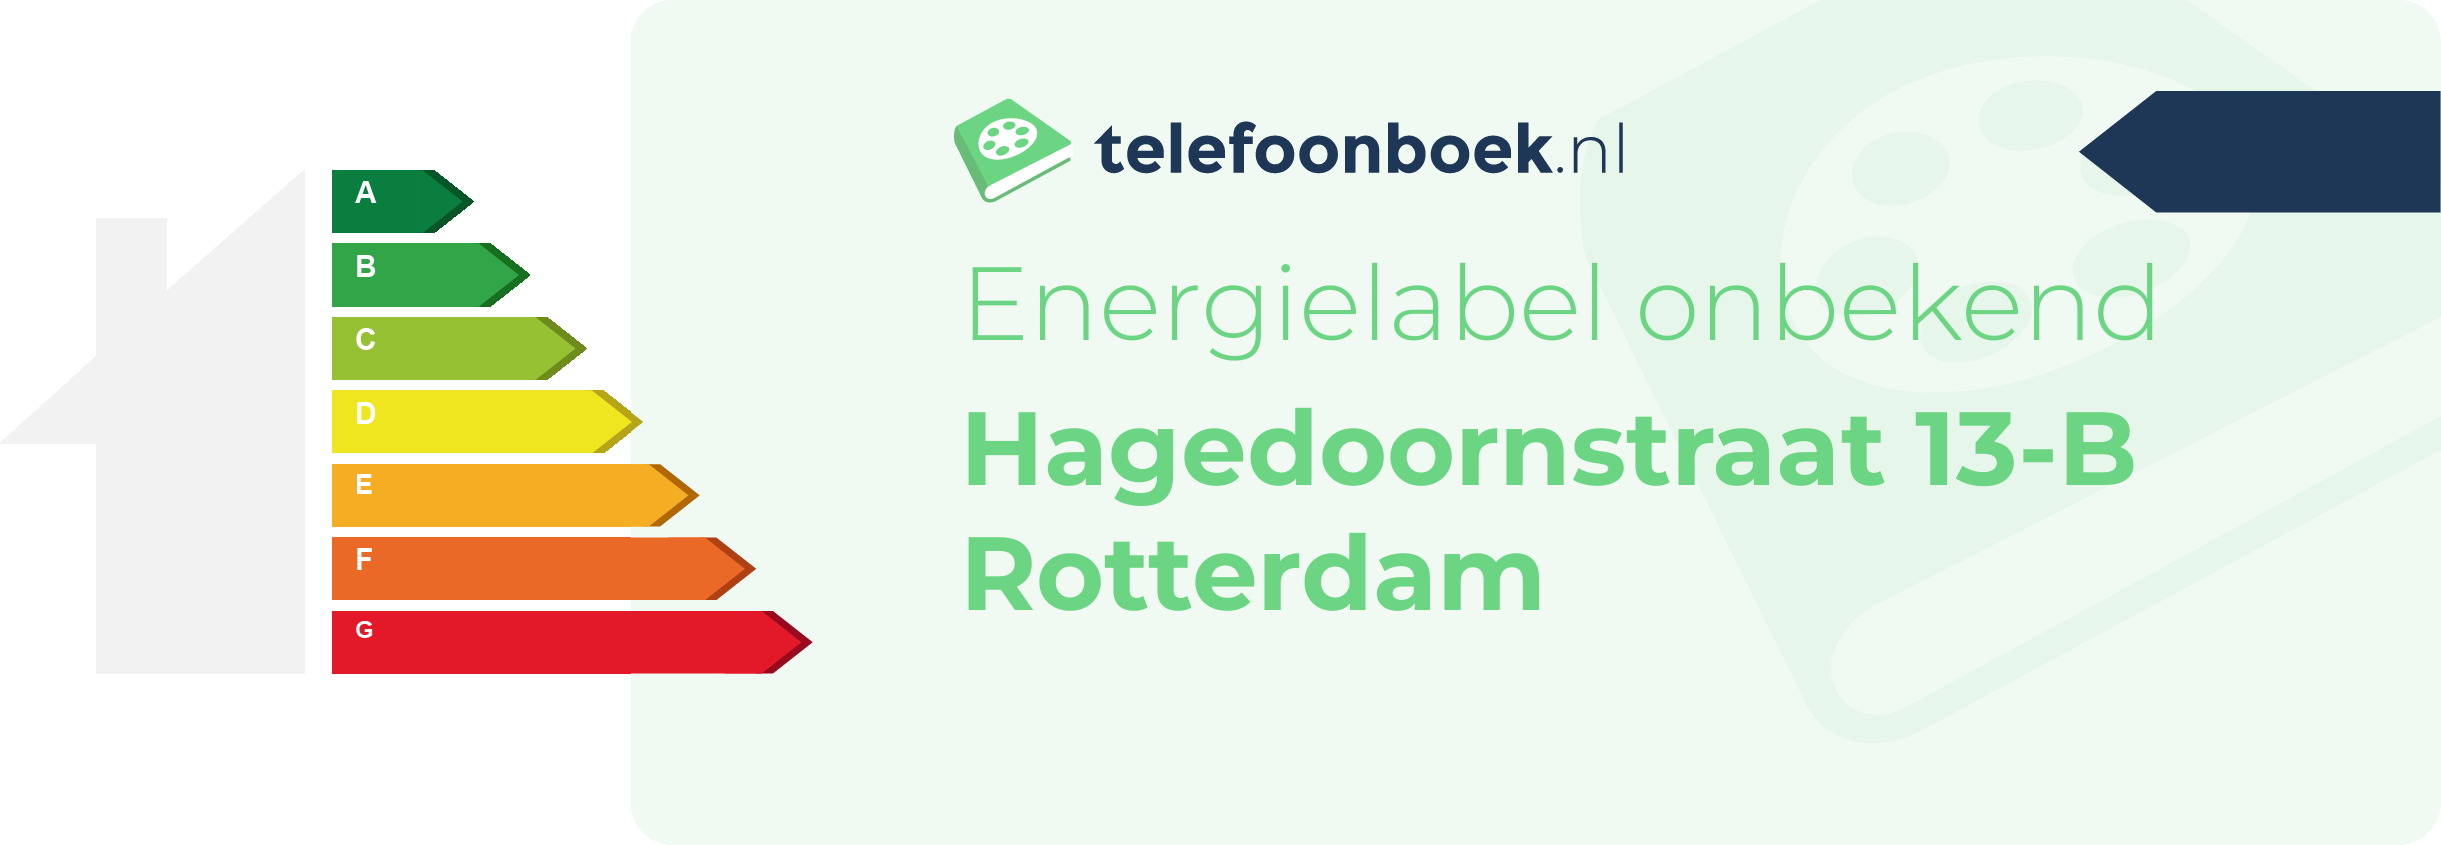 Energielabel Hagedoornstraat 13-B Rotterdam